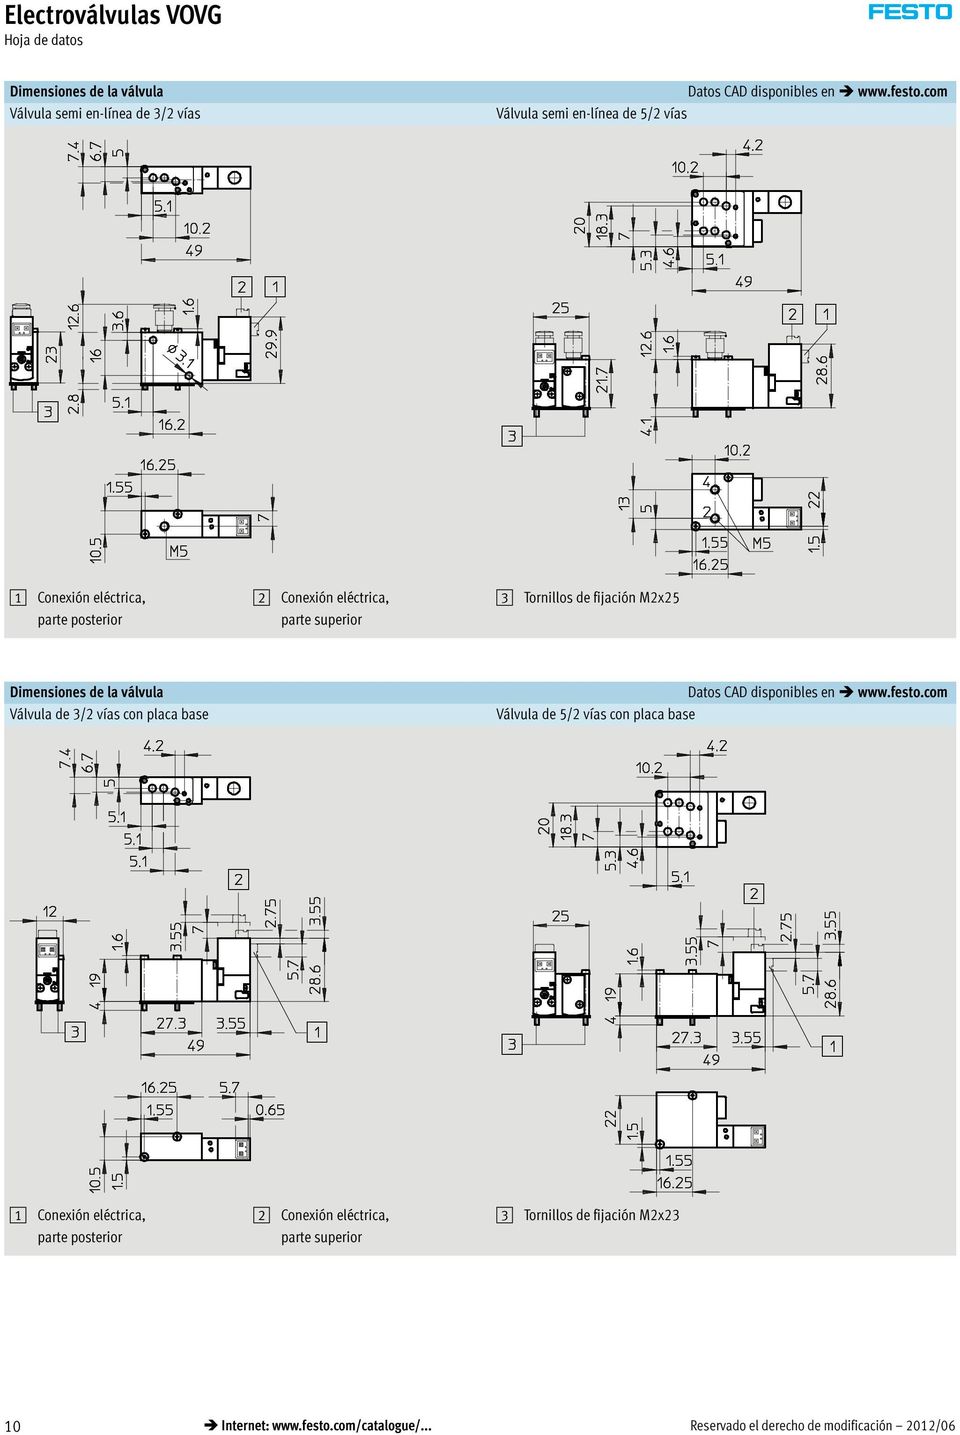 Dimensiones de la válvula Válvula de /2 vías con placa base Datos CAD disponibles en www.festo.